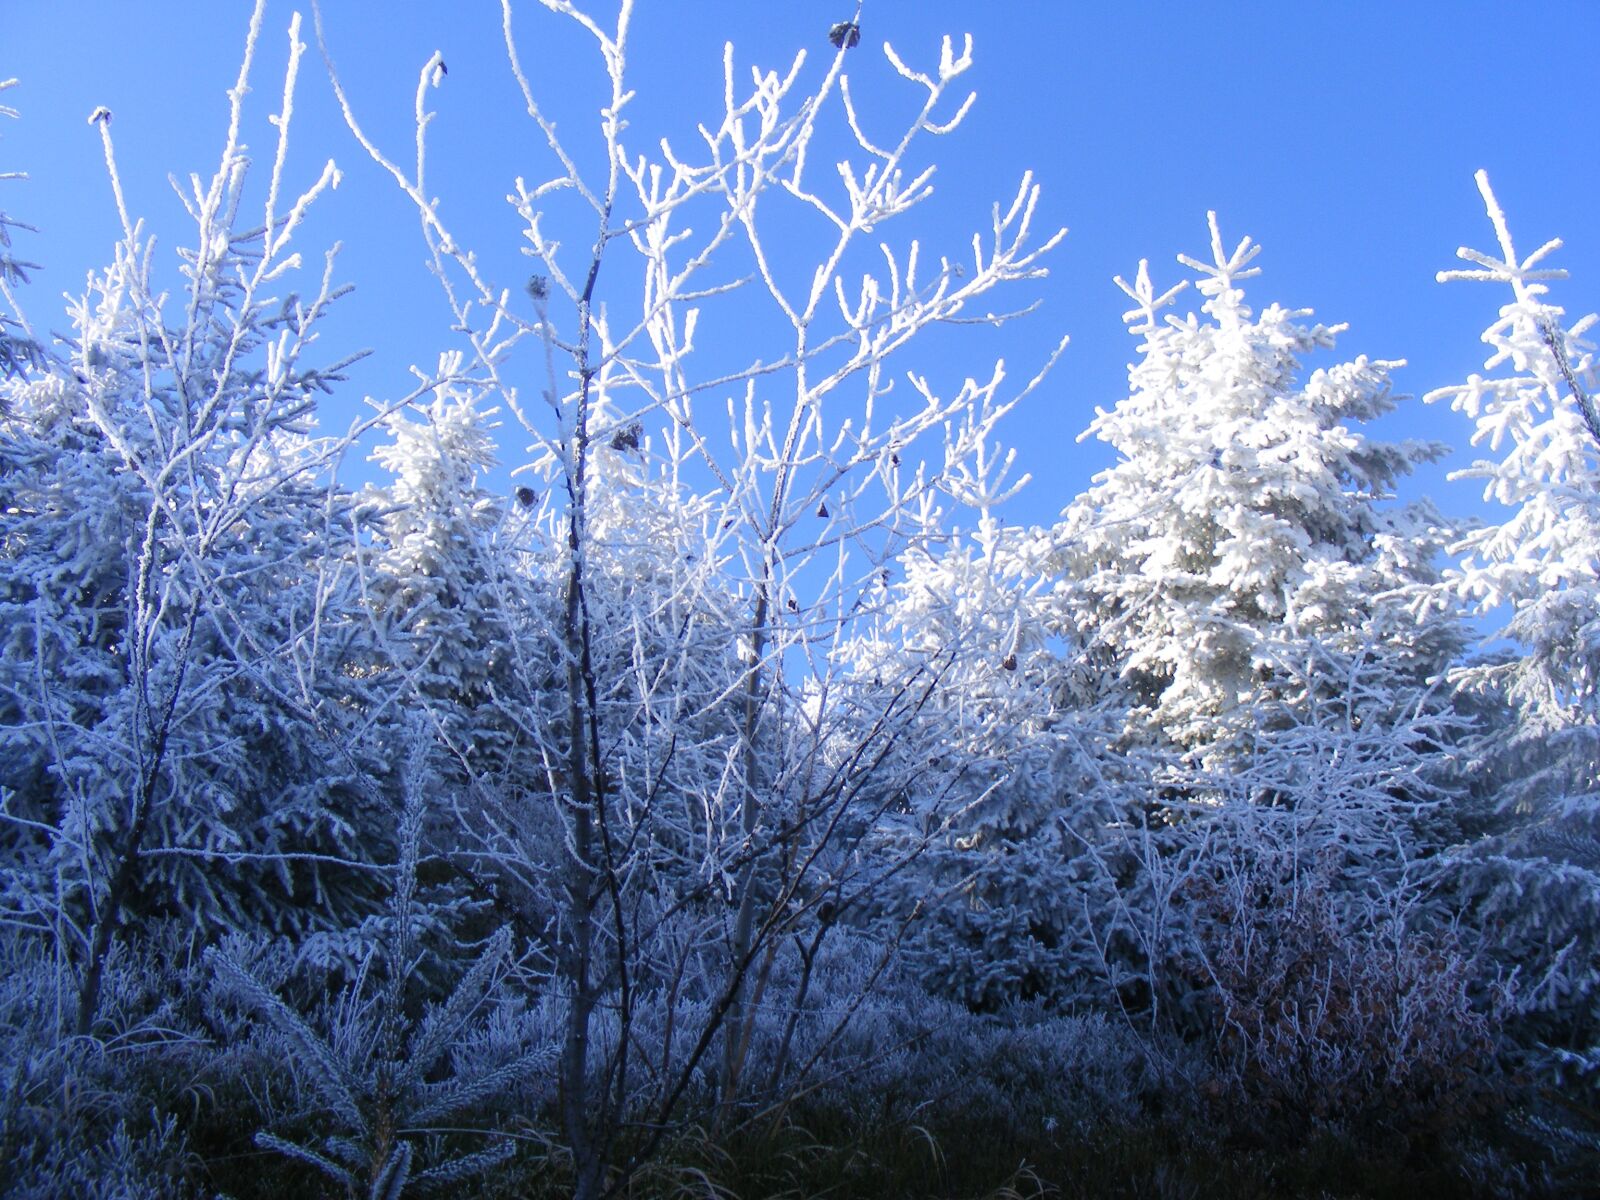 Fujifilm FinePix S5700 S700 sample photo. Winter, szczyrk, frost photography